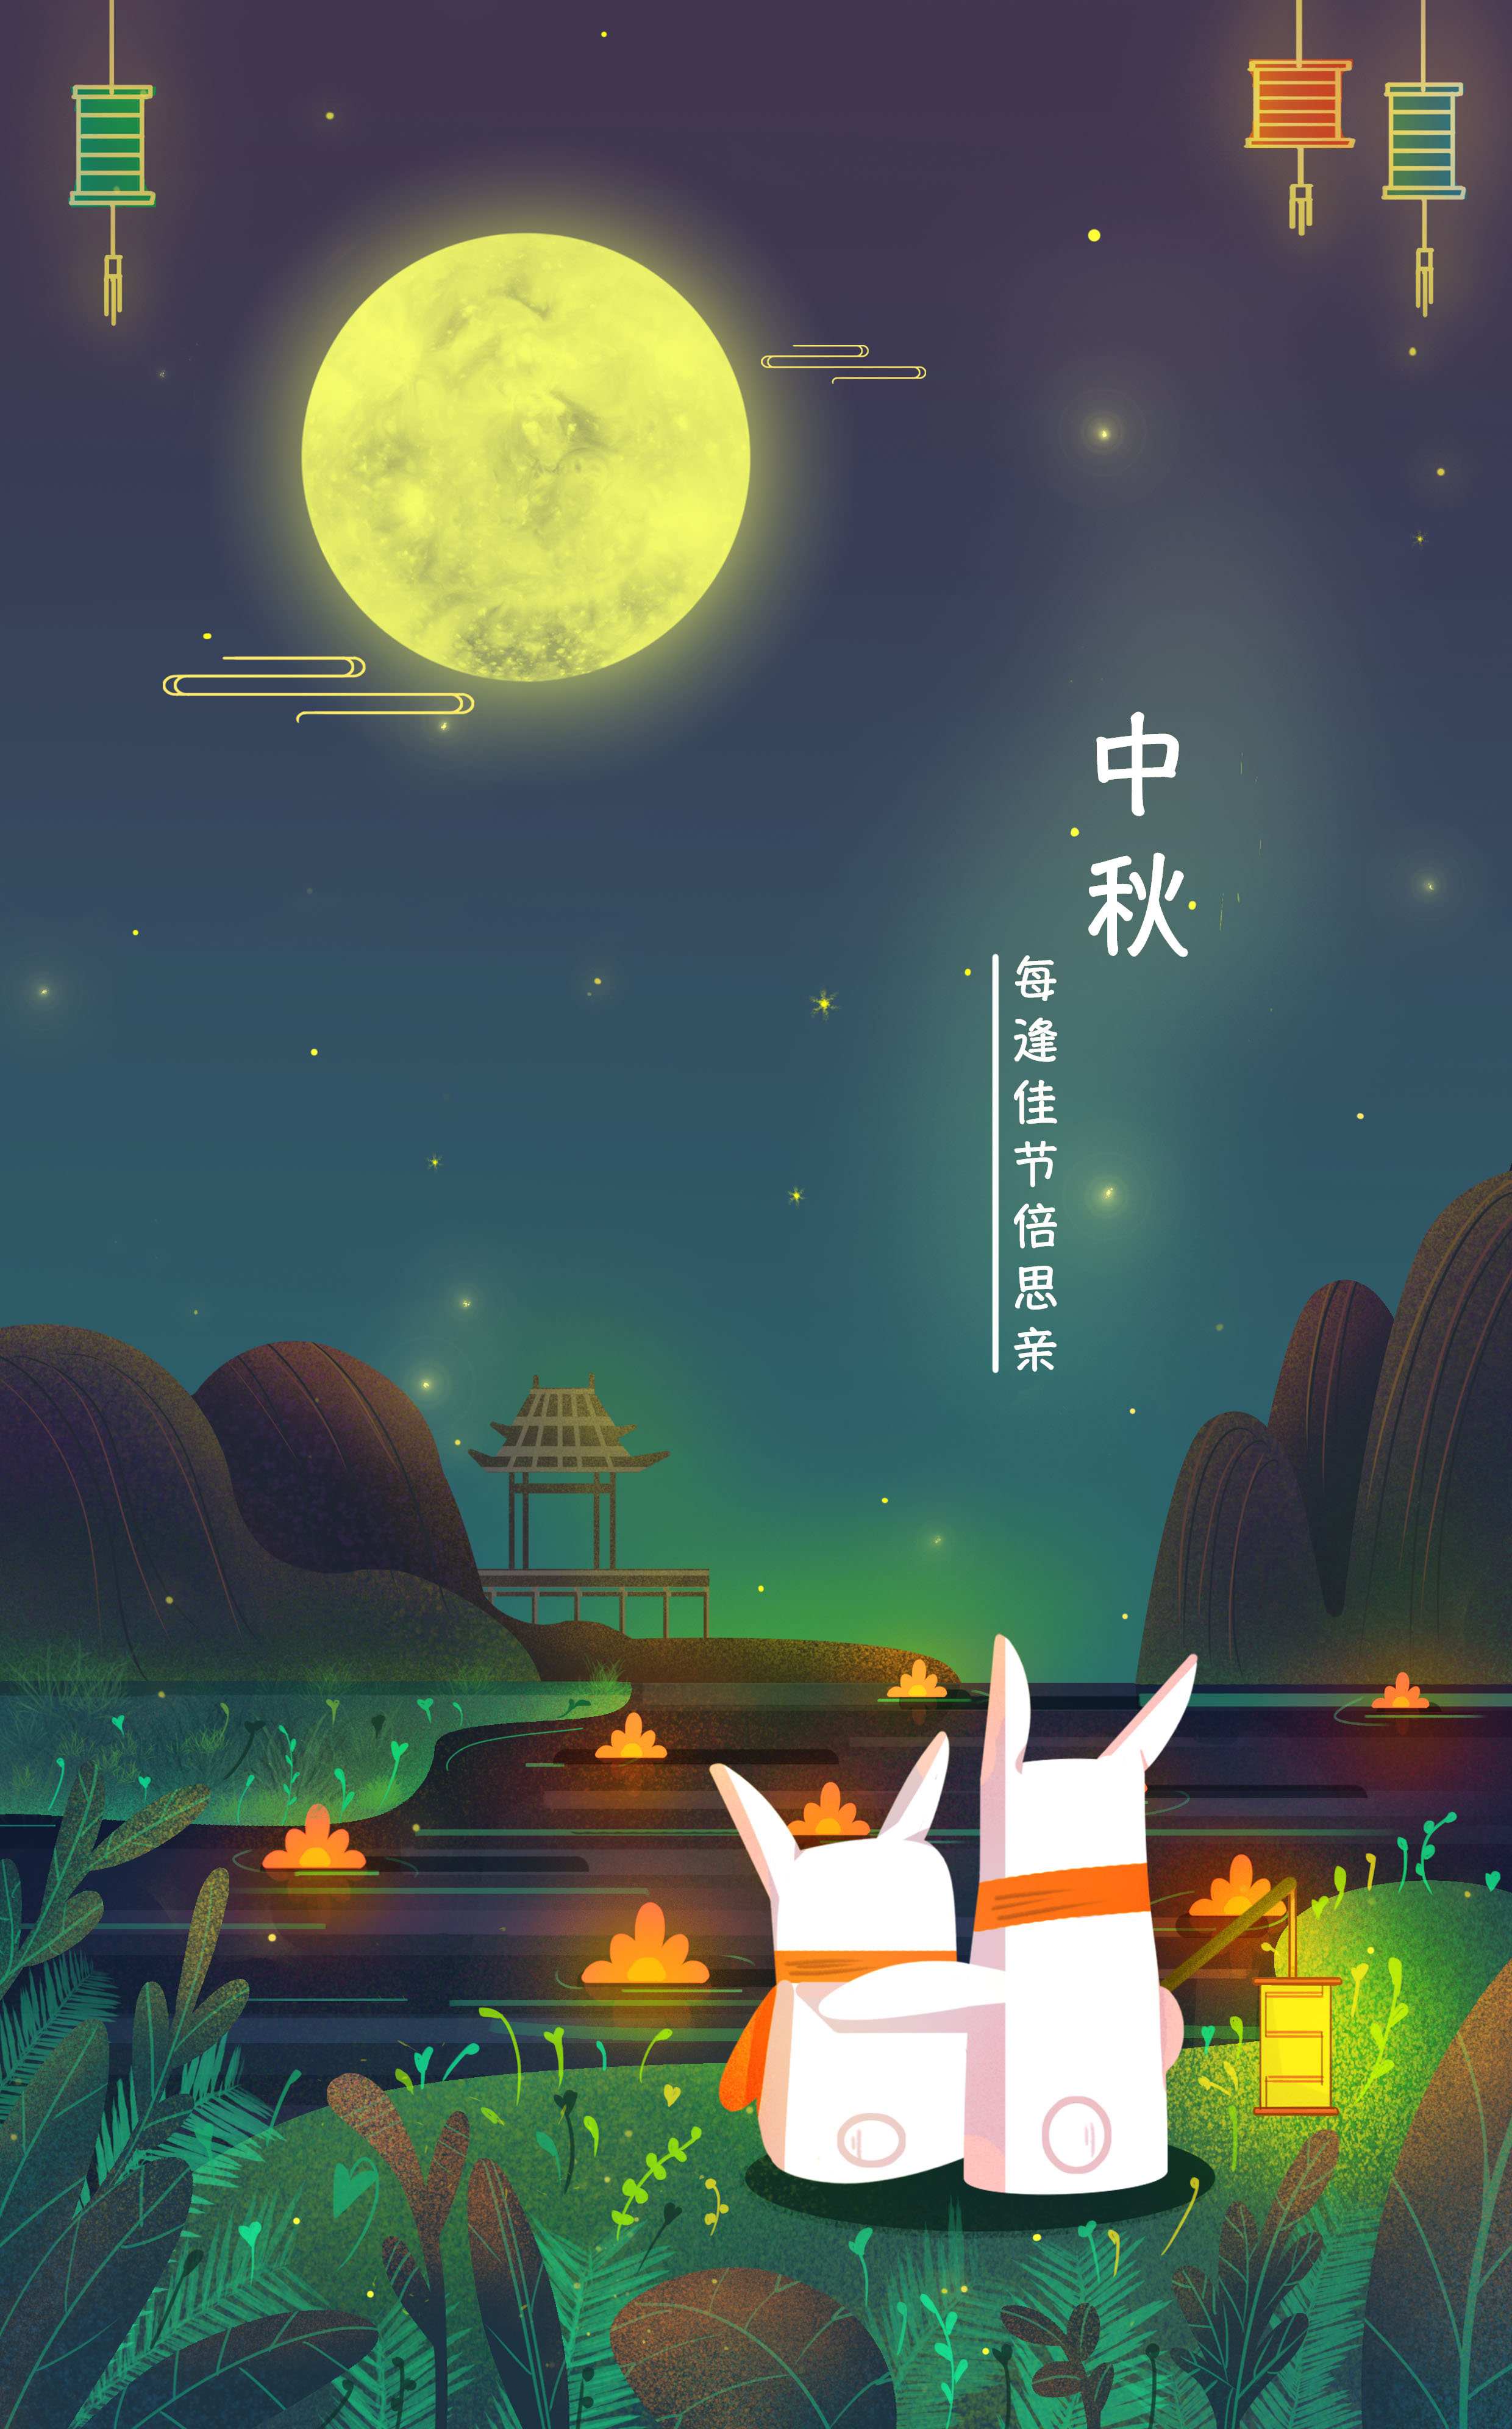 中秋节的作文插图图片